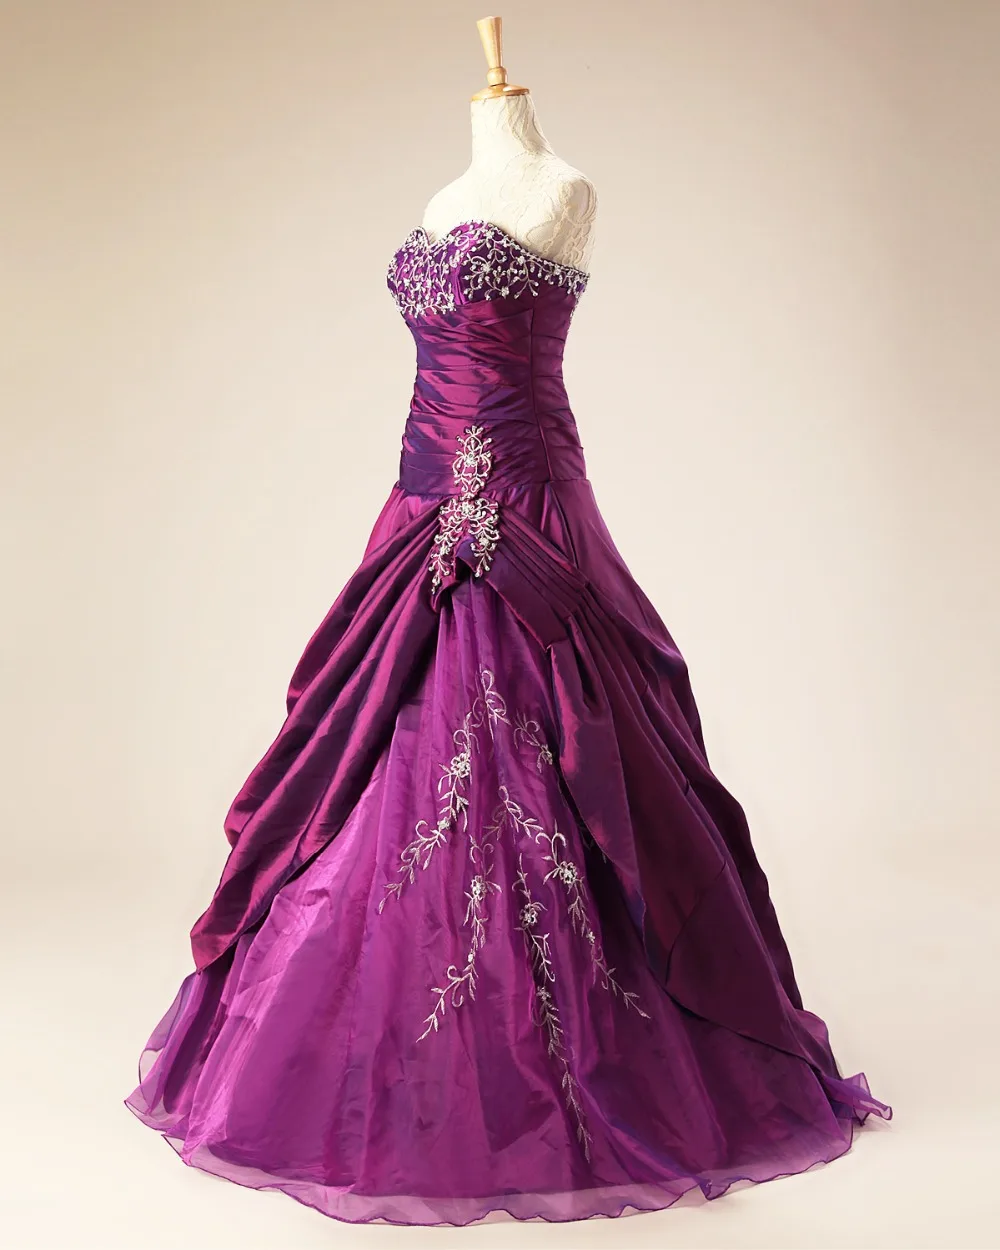 ANGELSBRIDEP Фиолетовый Пышное Платье с длинным тафта органза бальное платье Вечерние сладкий 16 платье дебютантки платья vestidos de 15 anos